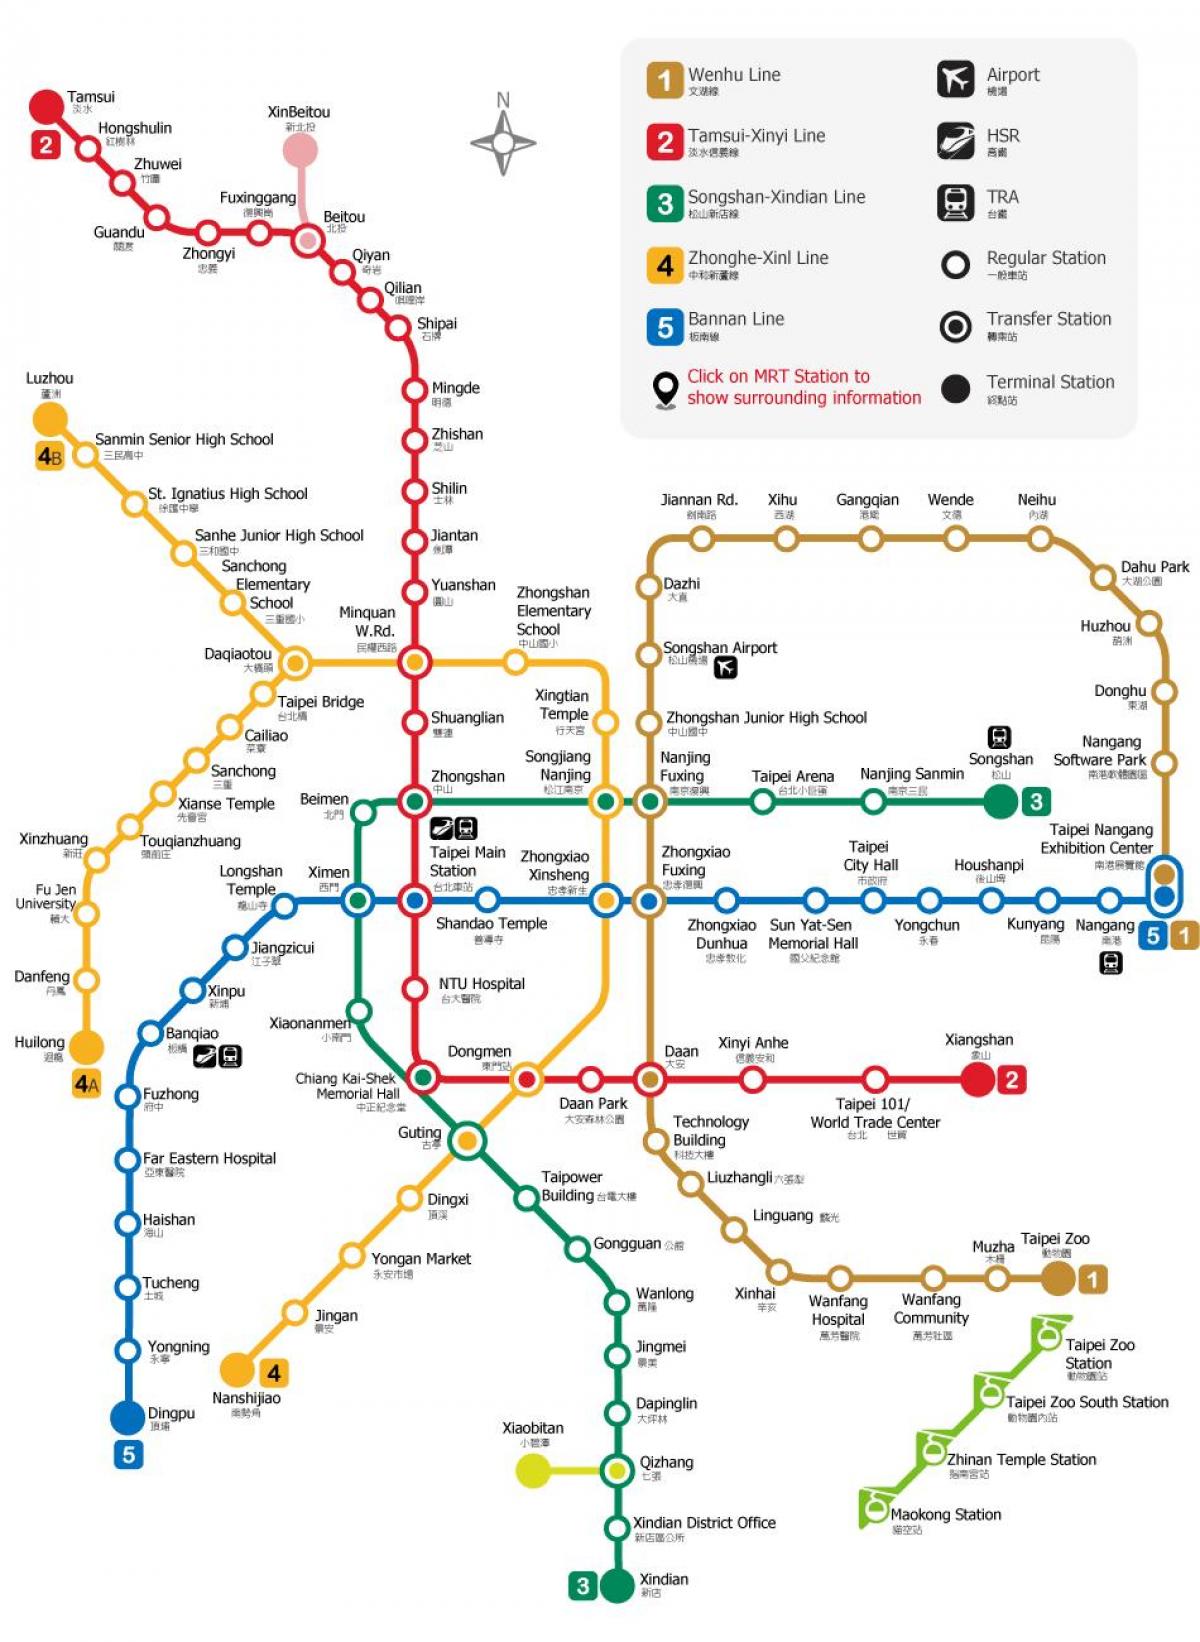 تائی پے ریلوے اسٹیشن کا نقشہ